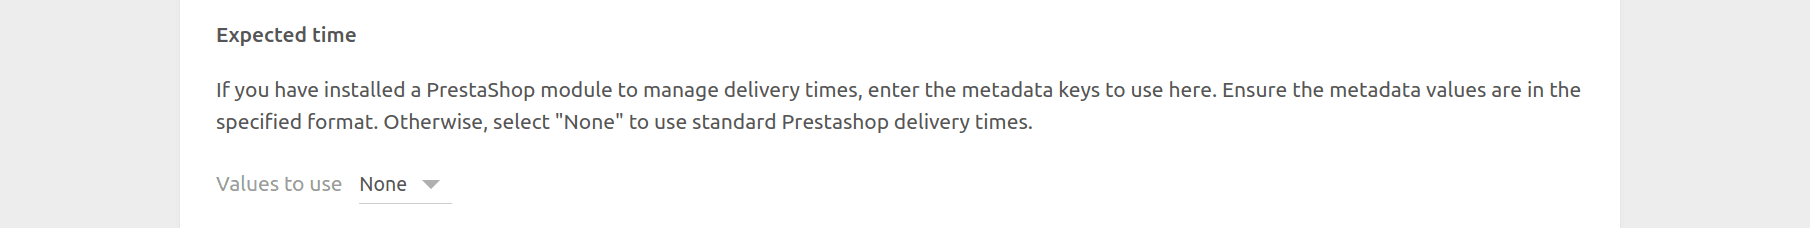 PrestaShop Bridge configuration page, expected time